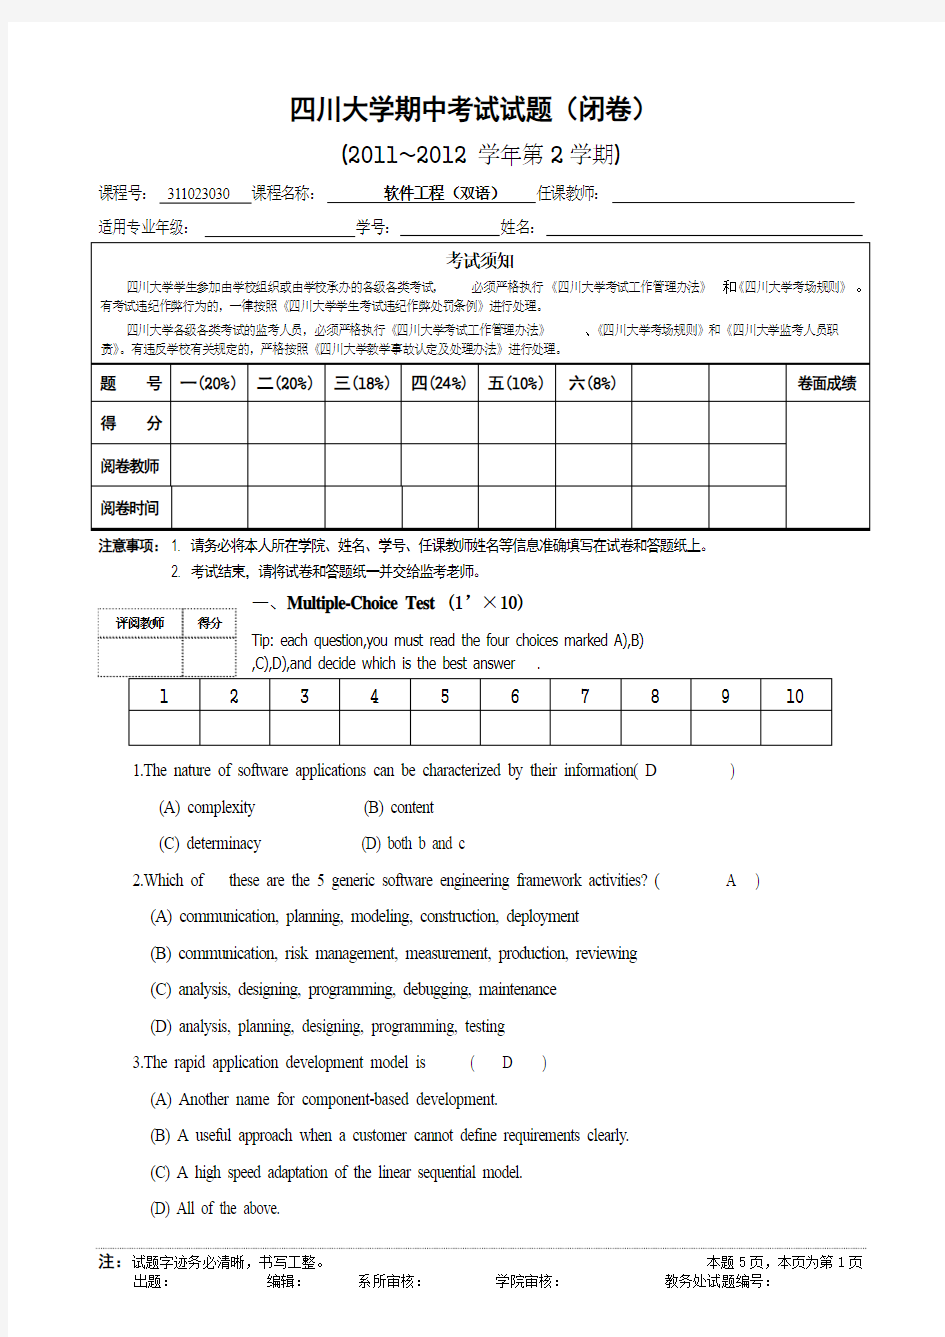 四川大学软件工程(双语)期中考试试题-最终版-含答案